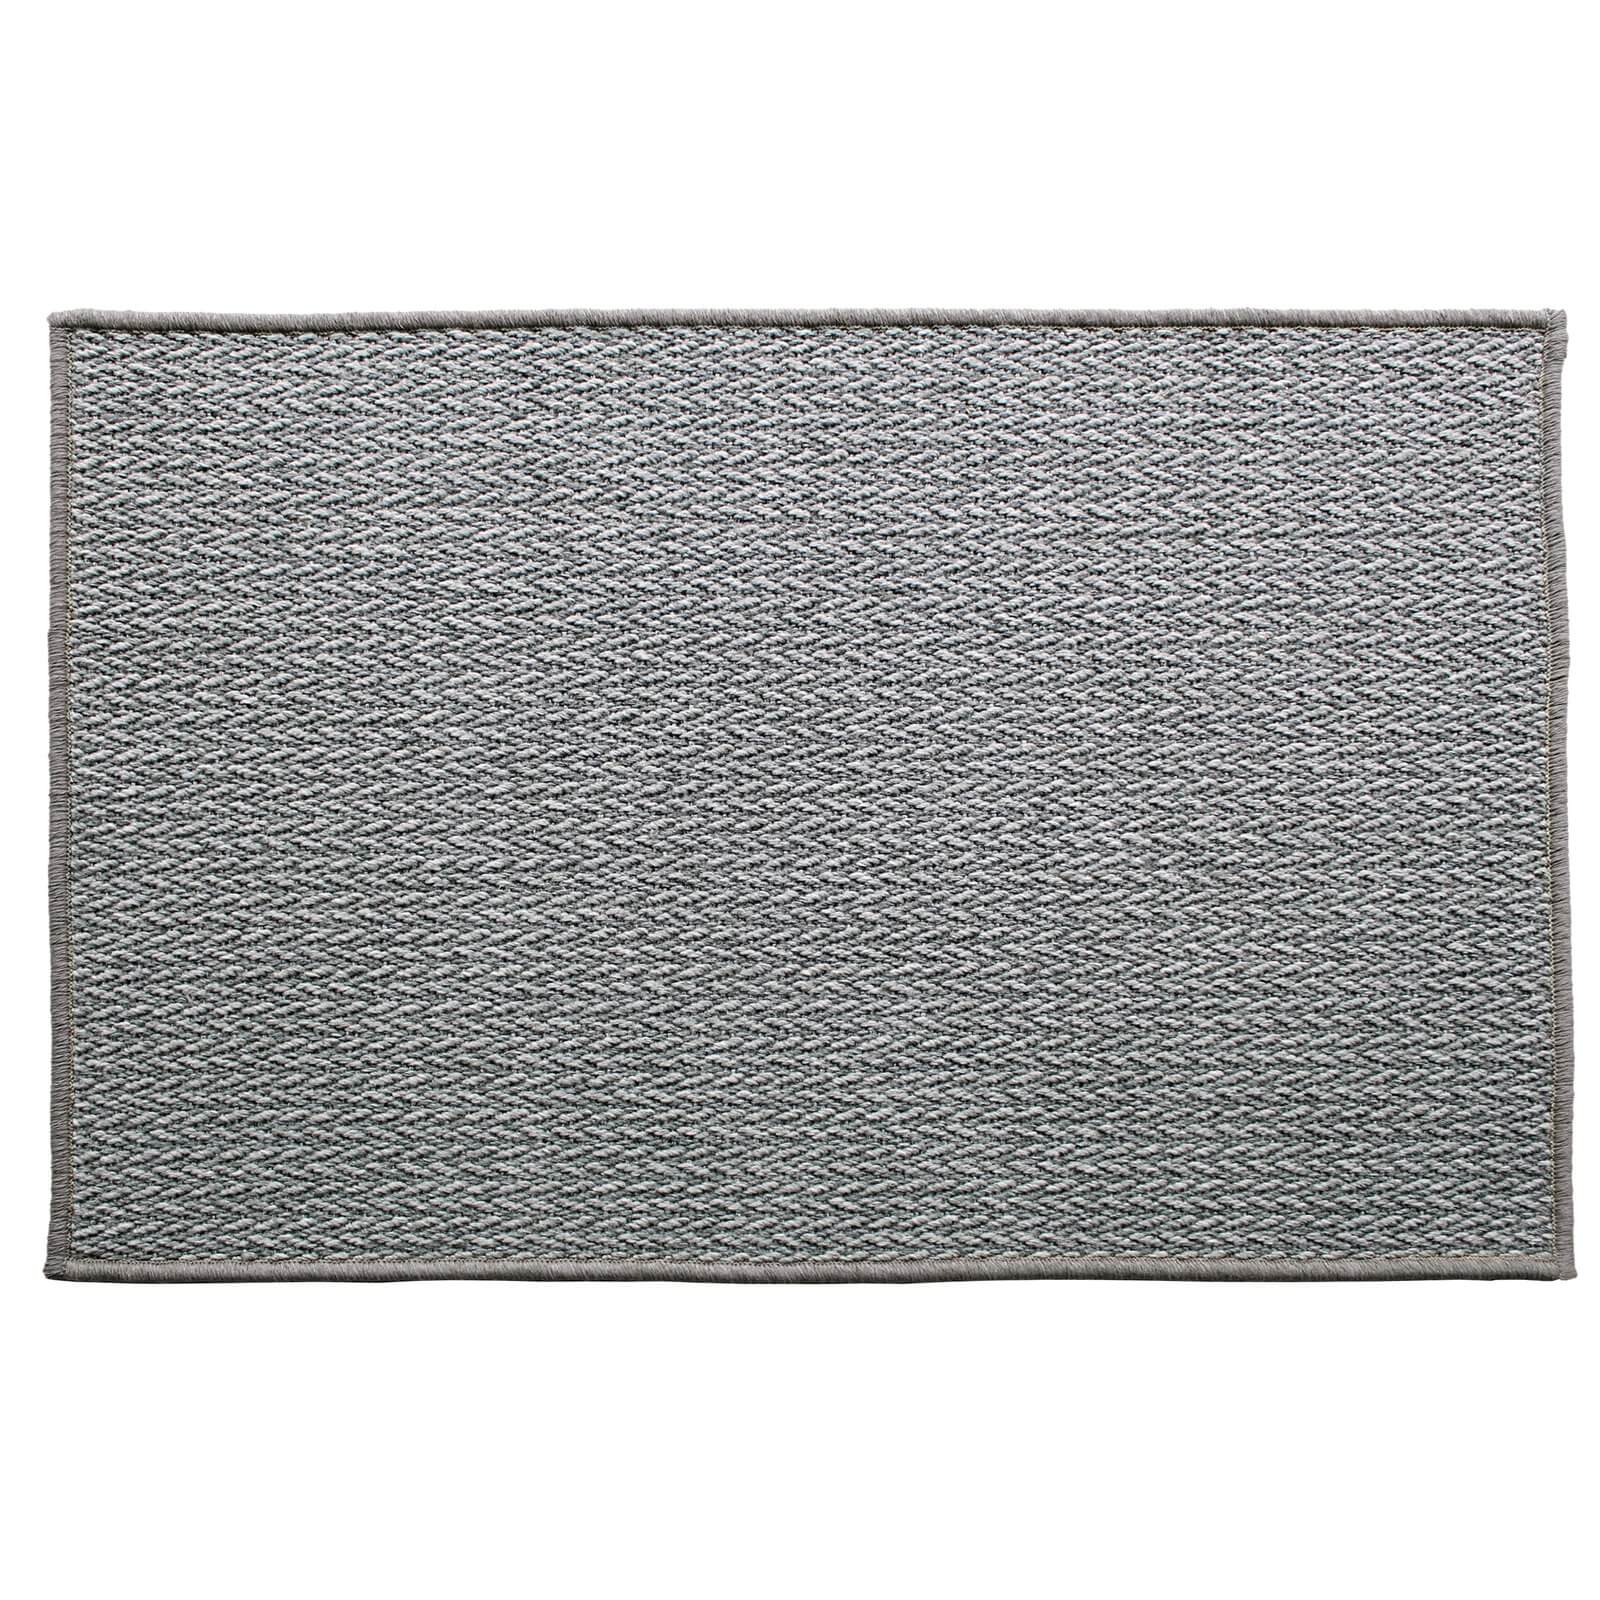 Grey Eco indoor doormat